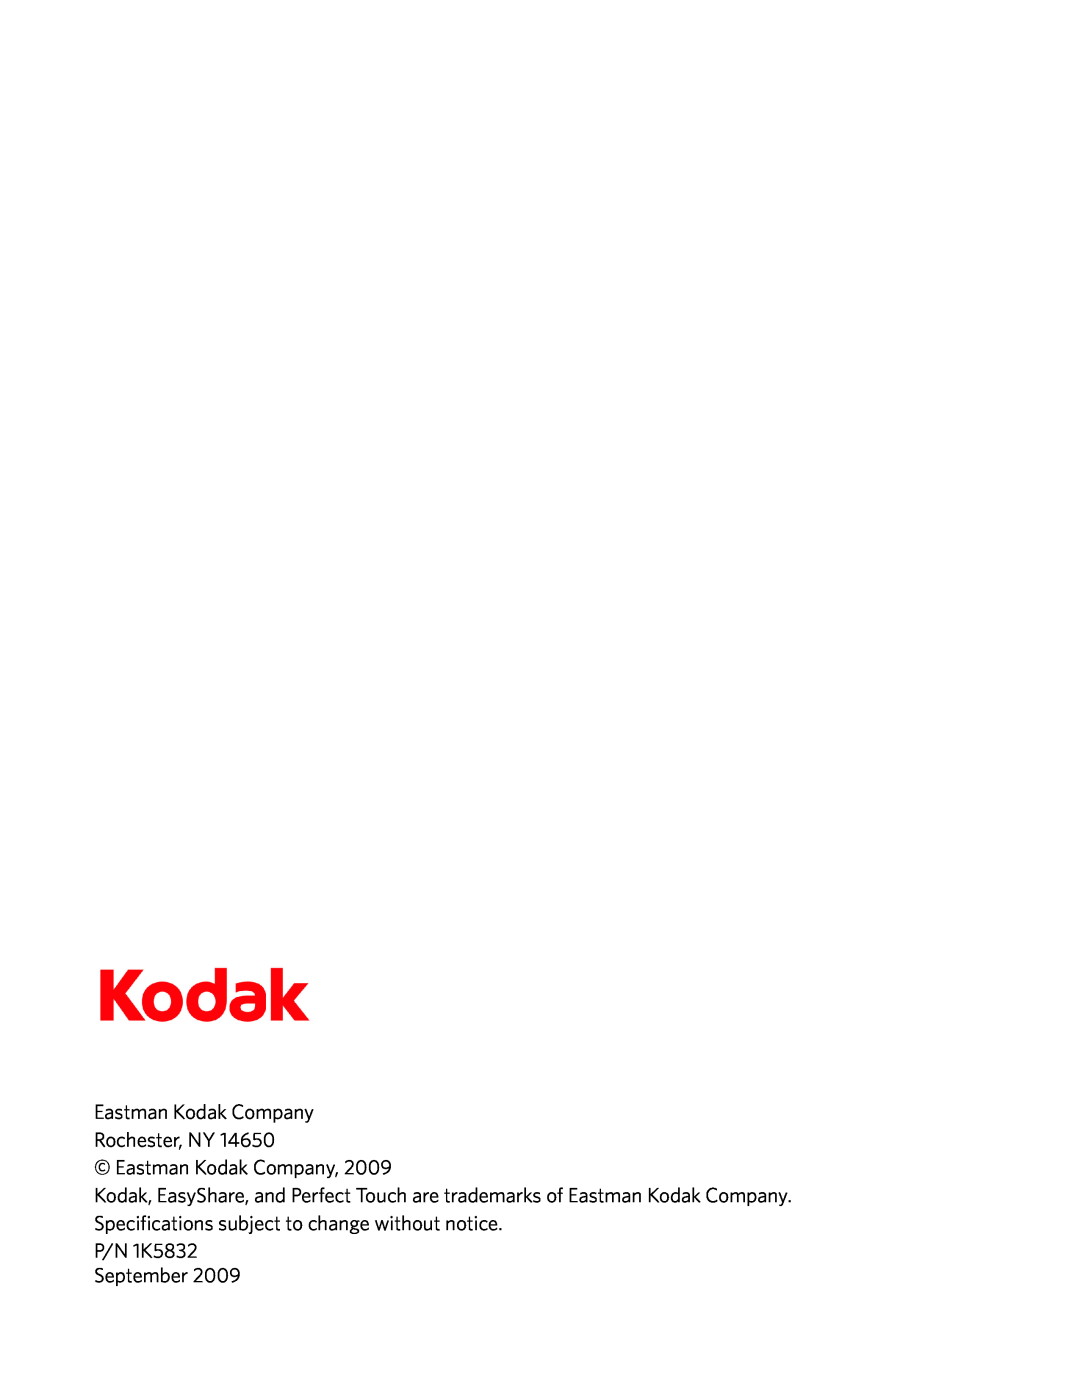 Kodak ESP 3250, ESP 3260, ESP 3200 Series manual Eastman Kodak Company Rochester, NY, P/N 1K5832 September 